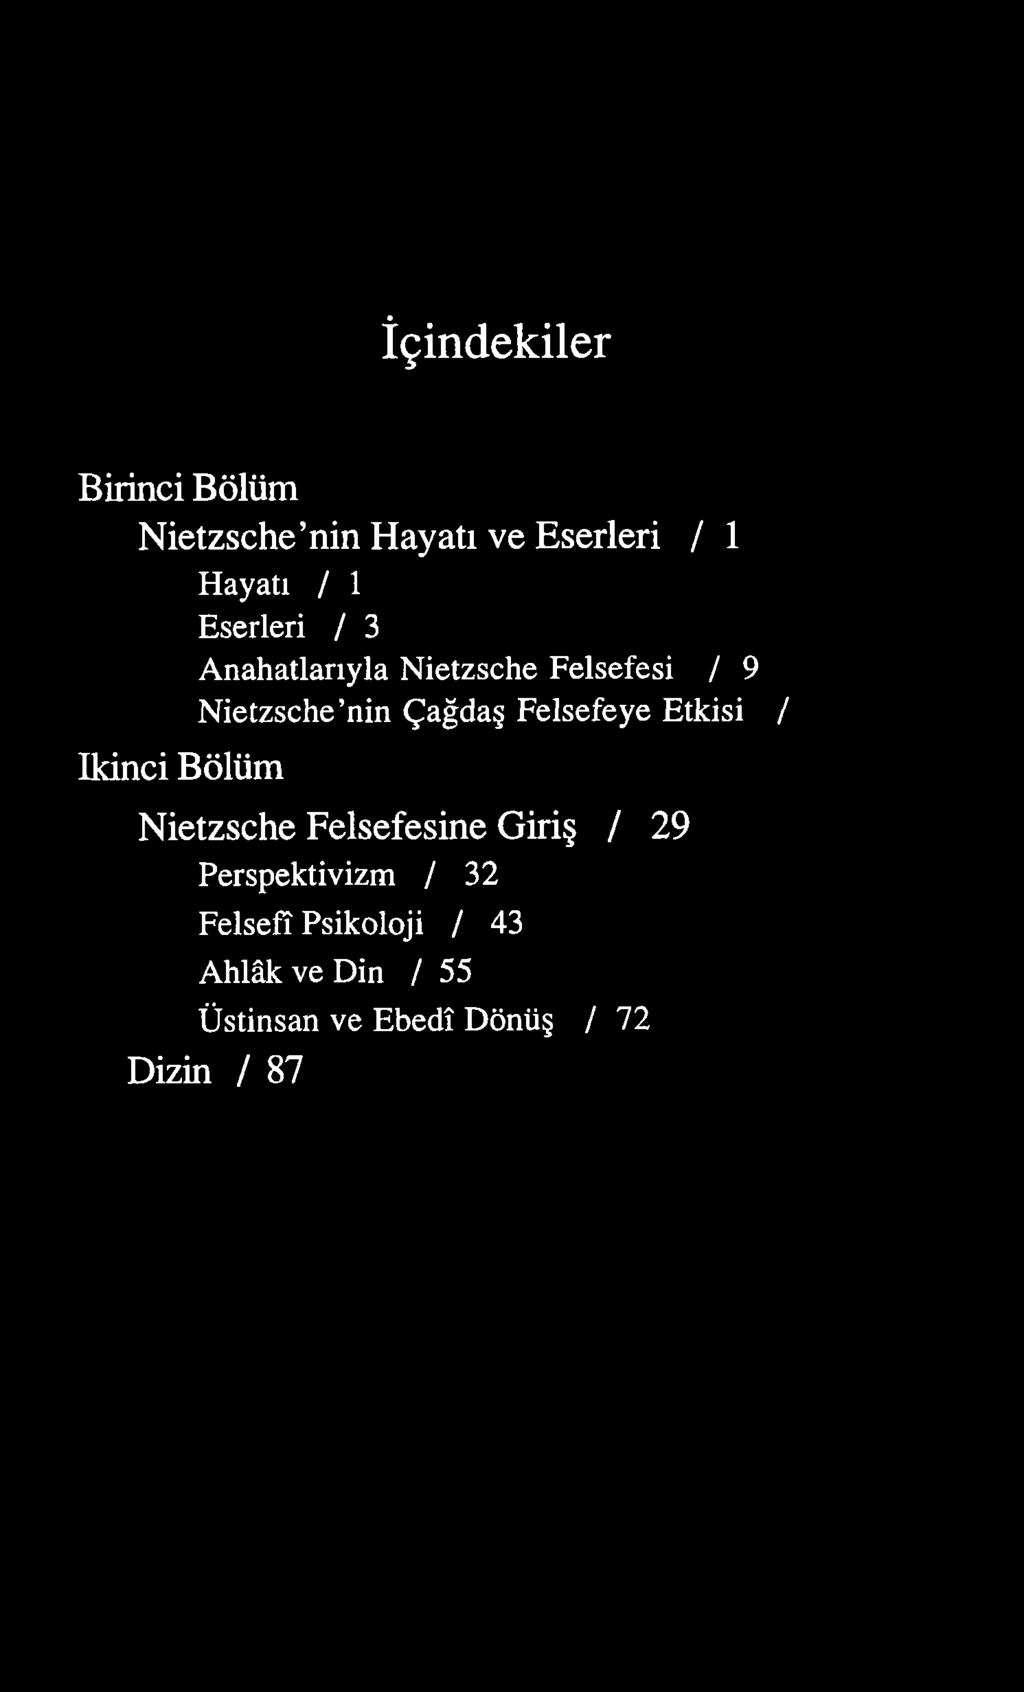 İçindekiler Birinci Bölüm Nietzsche nin Hayatı ve Eserleri / 1 Hayatı / 1 Eserleri / 3 Anahatlarıyla Nietzsche Felsefesi / 9 Nietzsche nin Çağdaş